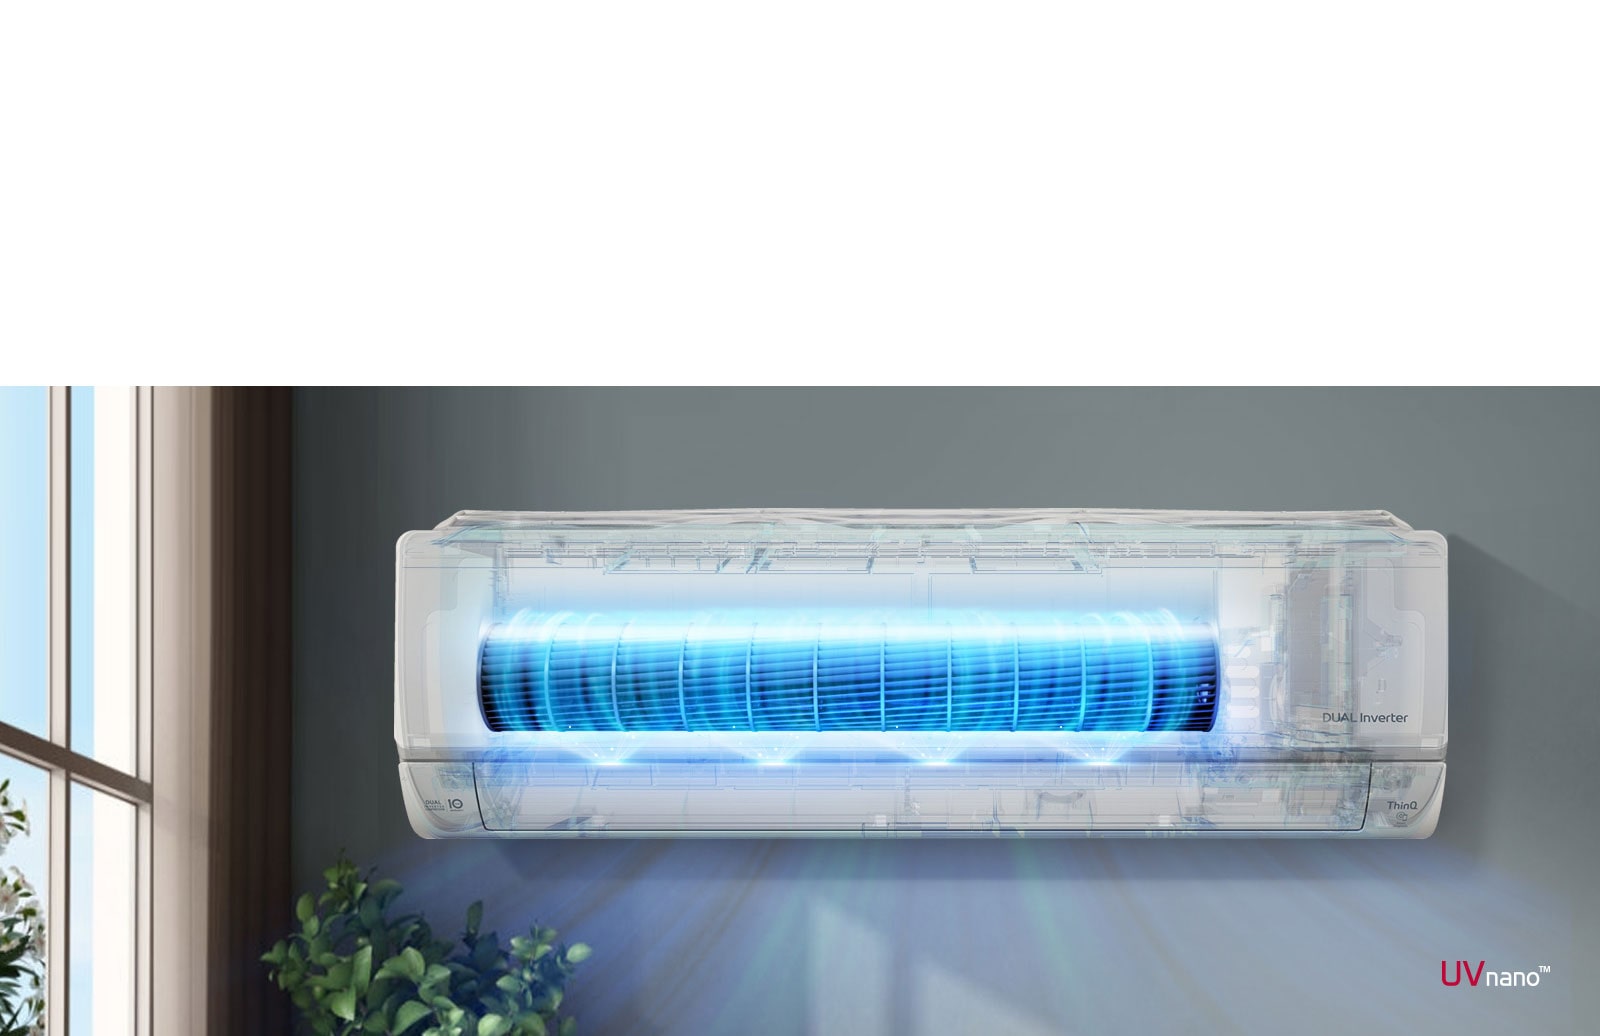 Film przedstawia widok z przodu klimatyzatora zainstalowanego na ścianie. Przód urządzenia jest prześwitujący i włącza się, aby pokazać wewnętrzne działanie. Wentylatory są podświetlone na niebiesko, aby pokazać światło UV LED, które usuwa bakterie. Z maszyny wylatuje powietrze. Logo UVnano znajduje się w prawym dolnym rogu.